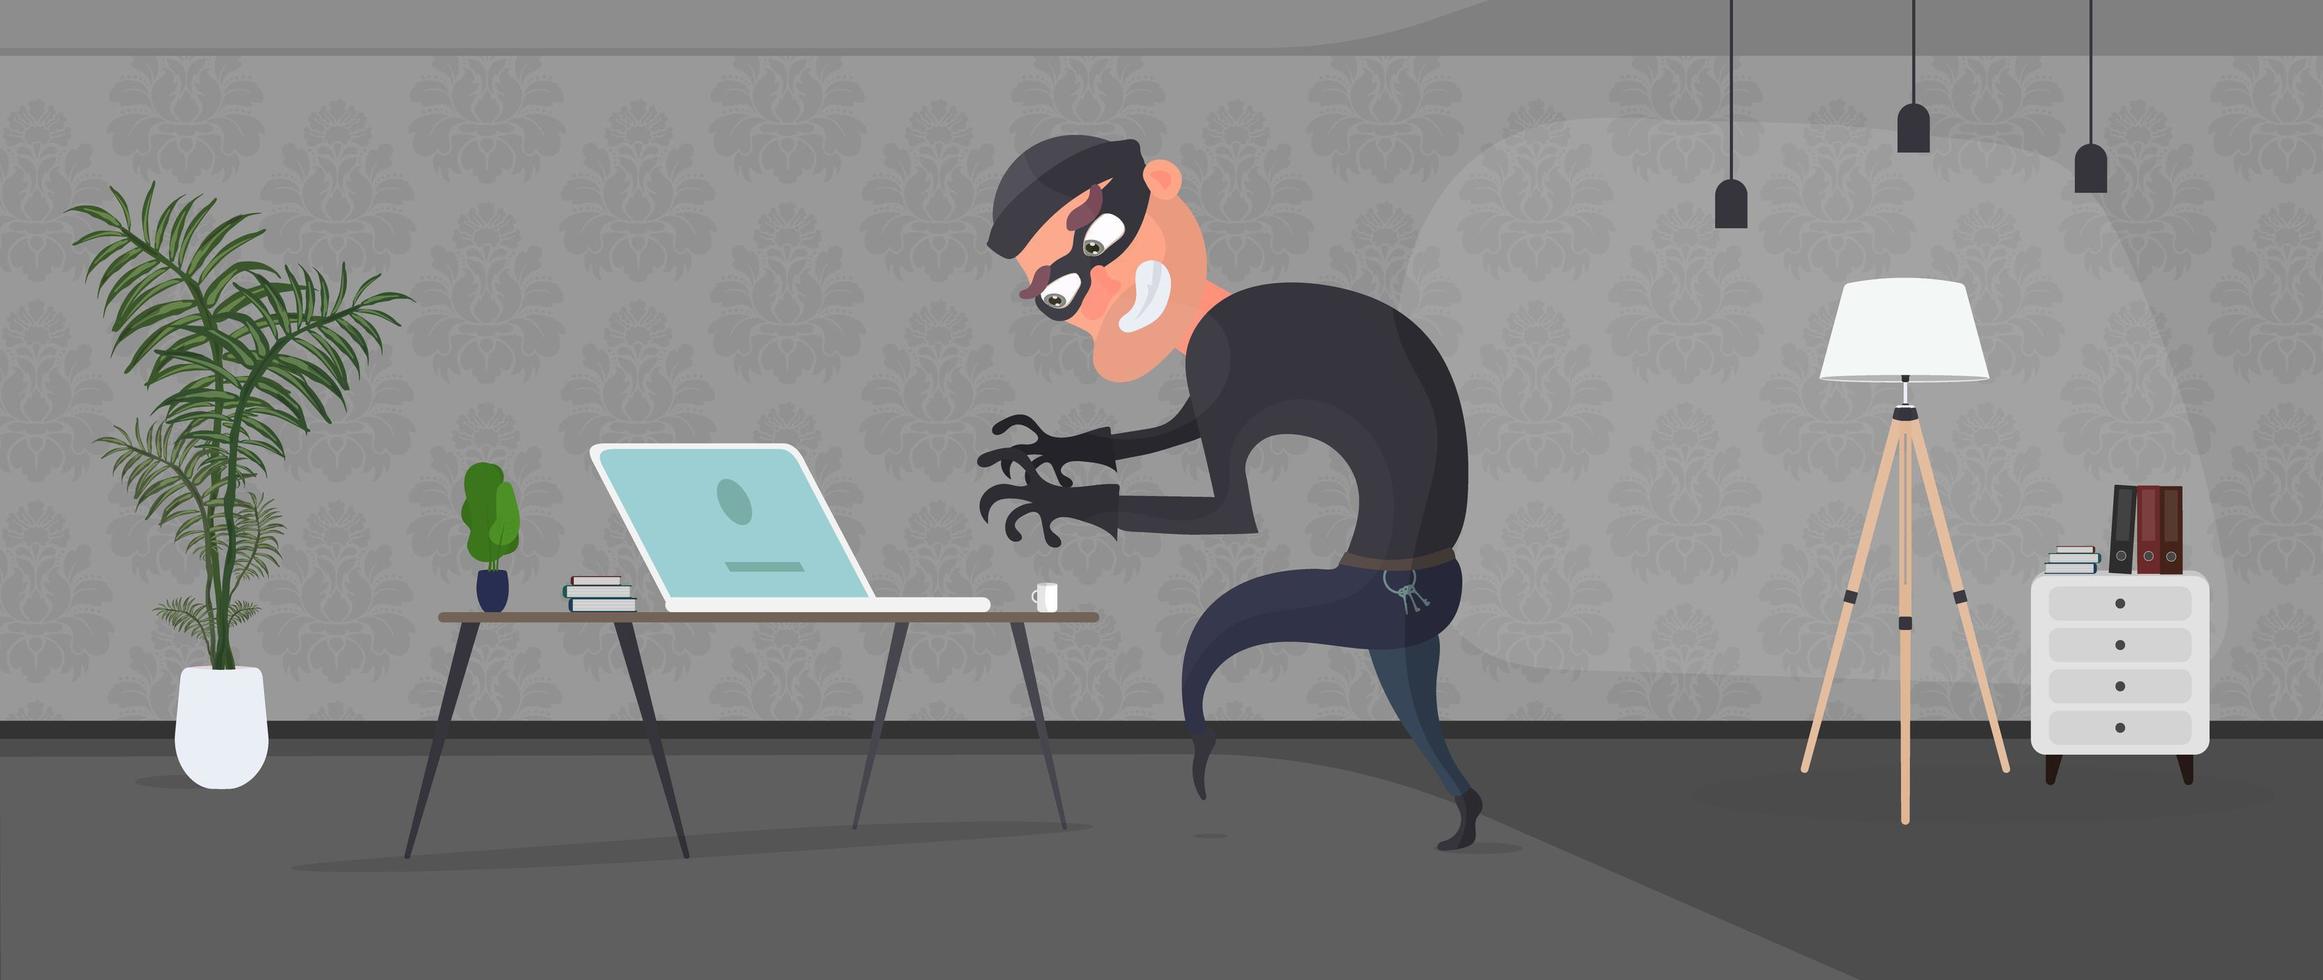 o ladrão entrou no apartamento e roubou o laptop. um ladrão de escritório rouba dados. conceito de segurança e roubo. vetor. vetor